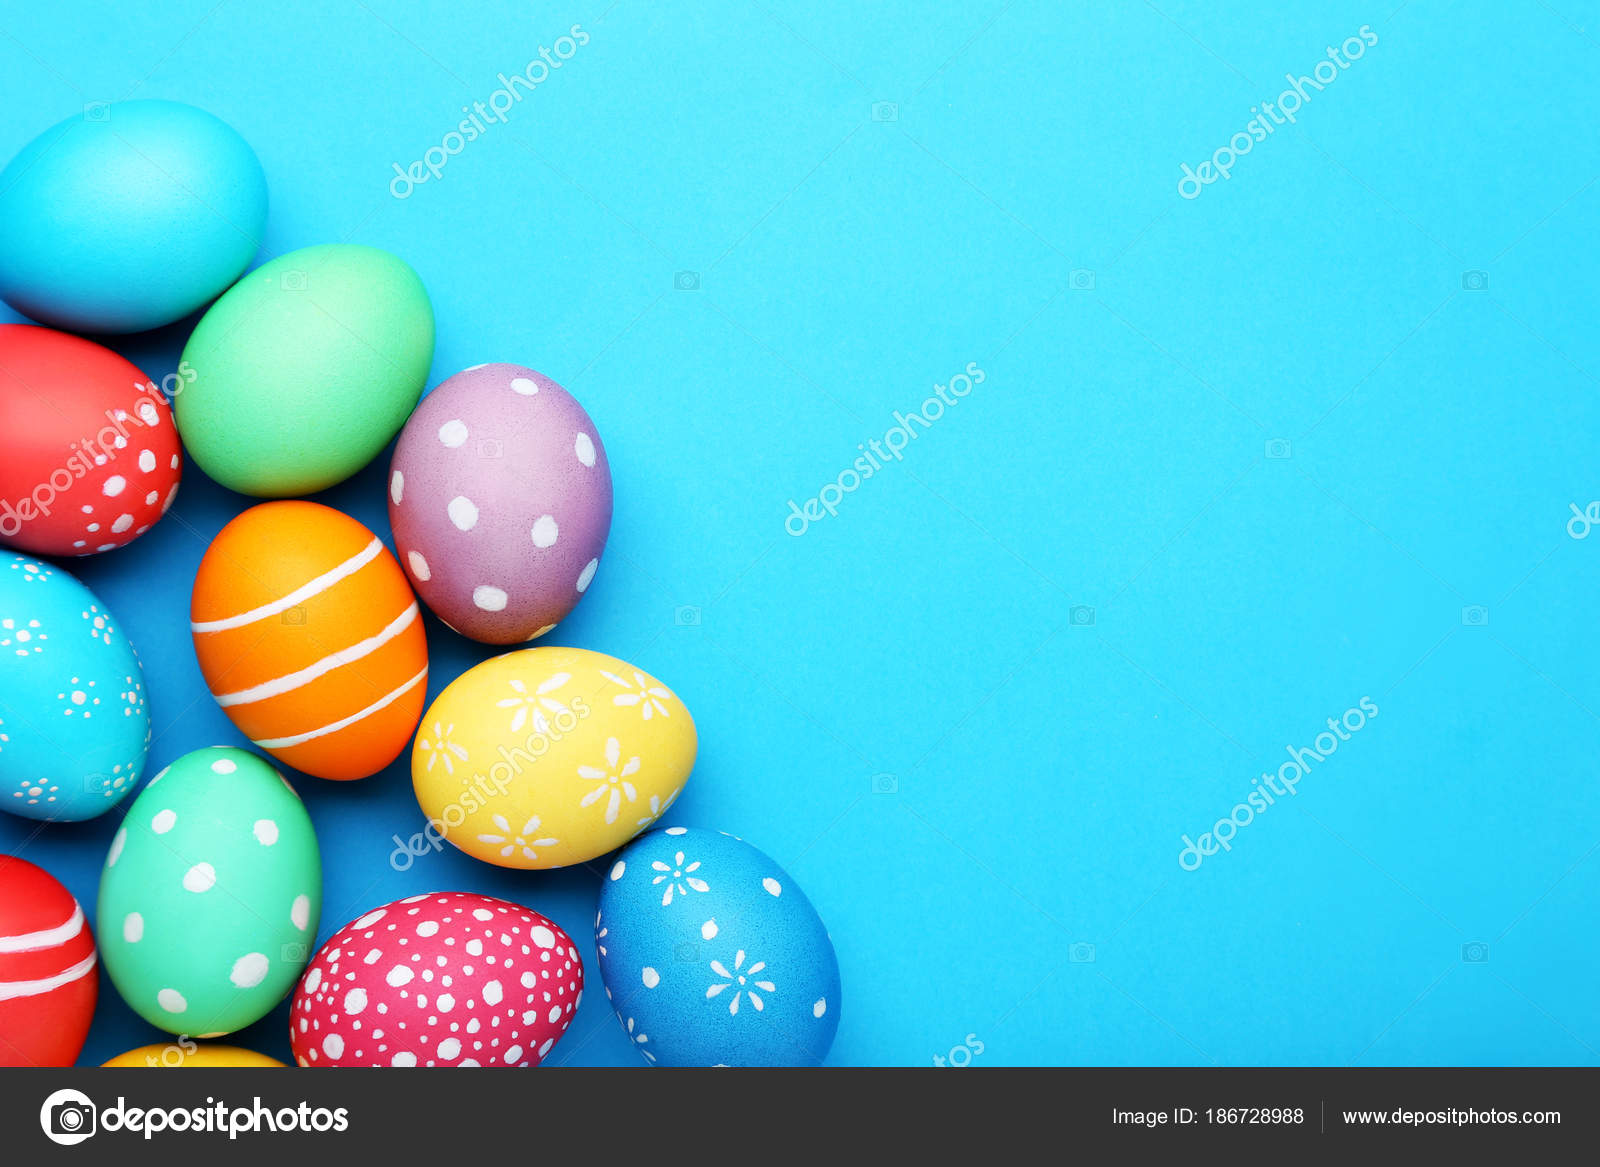 Hộp trứng phục sinh đầy màu sắc trong bức hình này sẽ khiến bạn cảm thấy vui tươi và hào hứng. Hãy đến và chiêm ngưỡng những chiếc trứng tuyệt đẹp này!